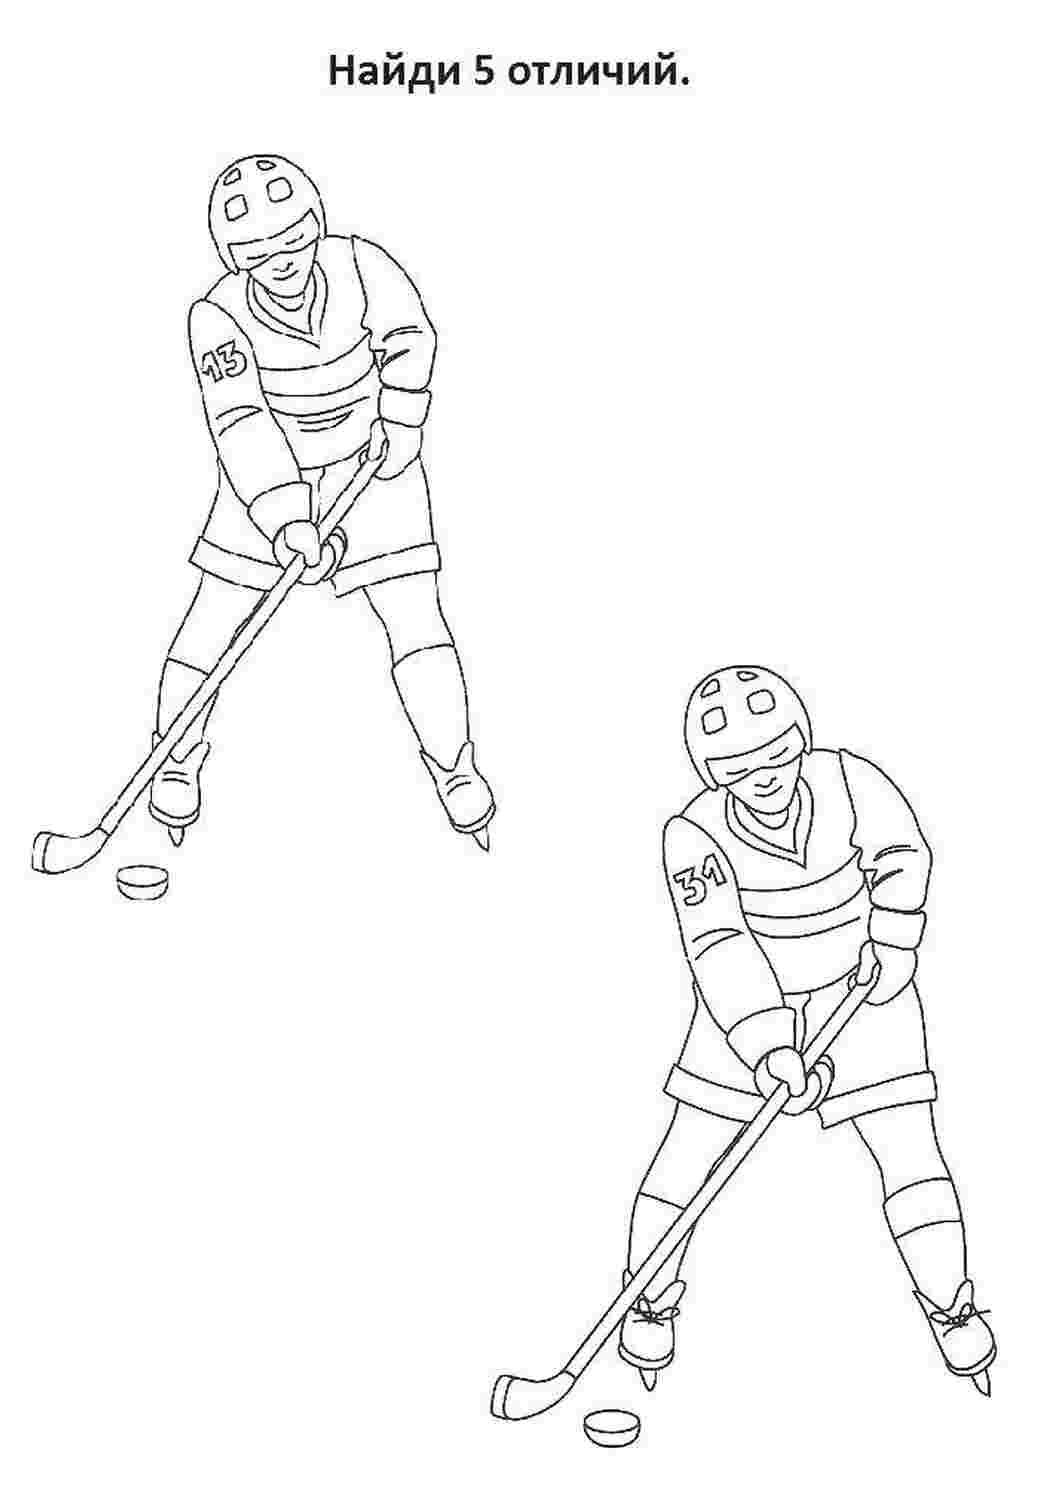 Хоккей задания для дошкольников